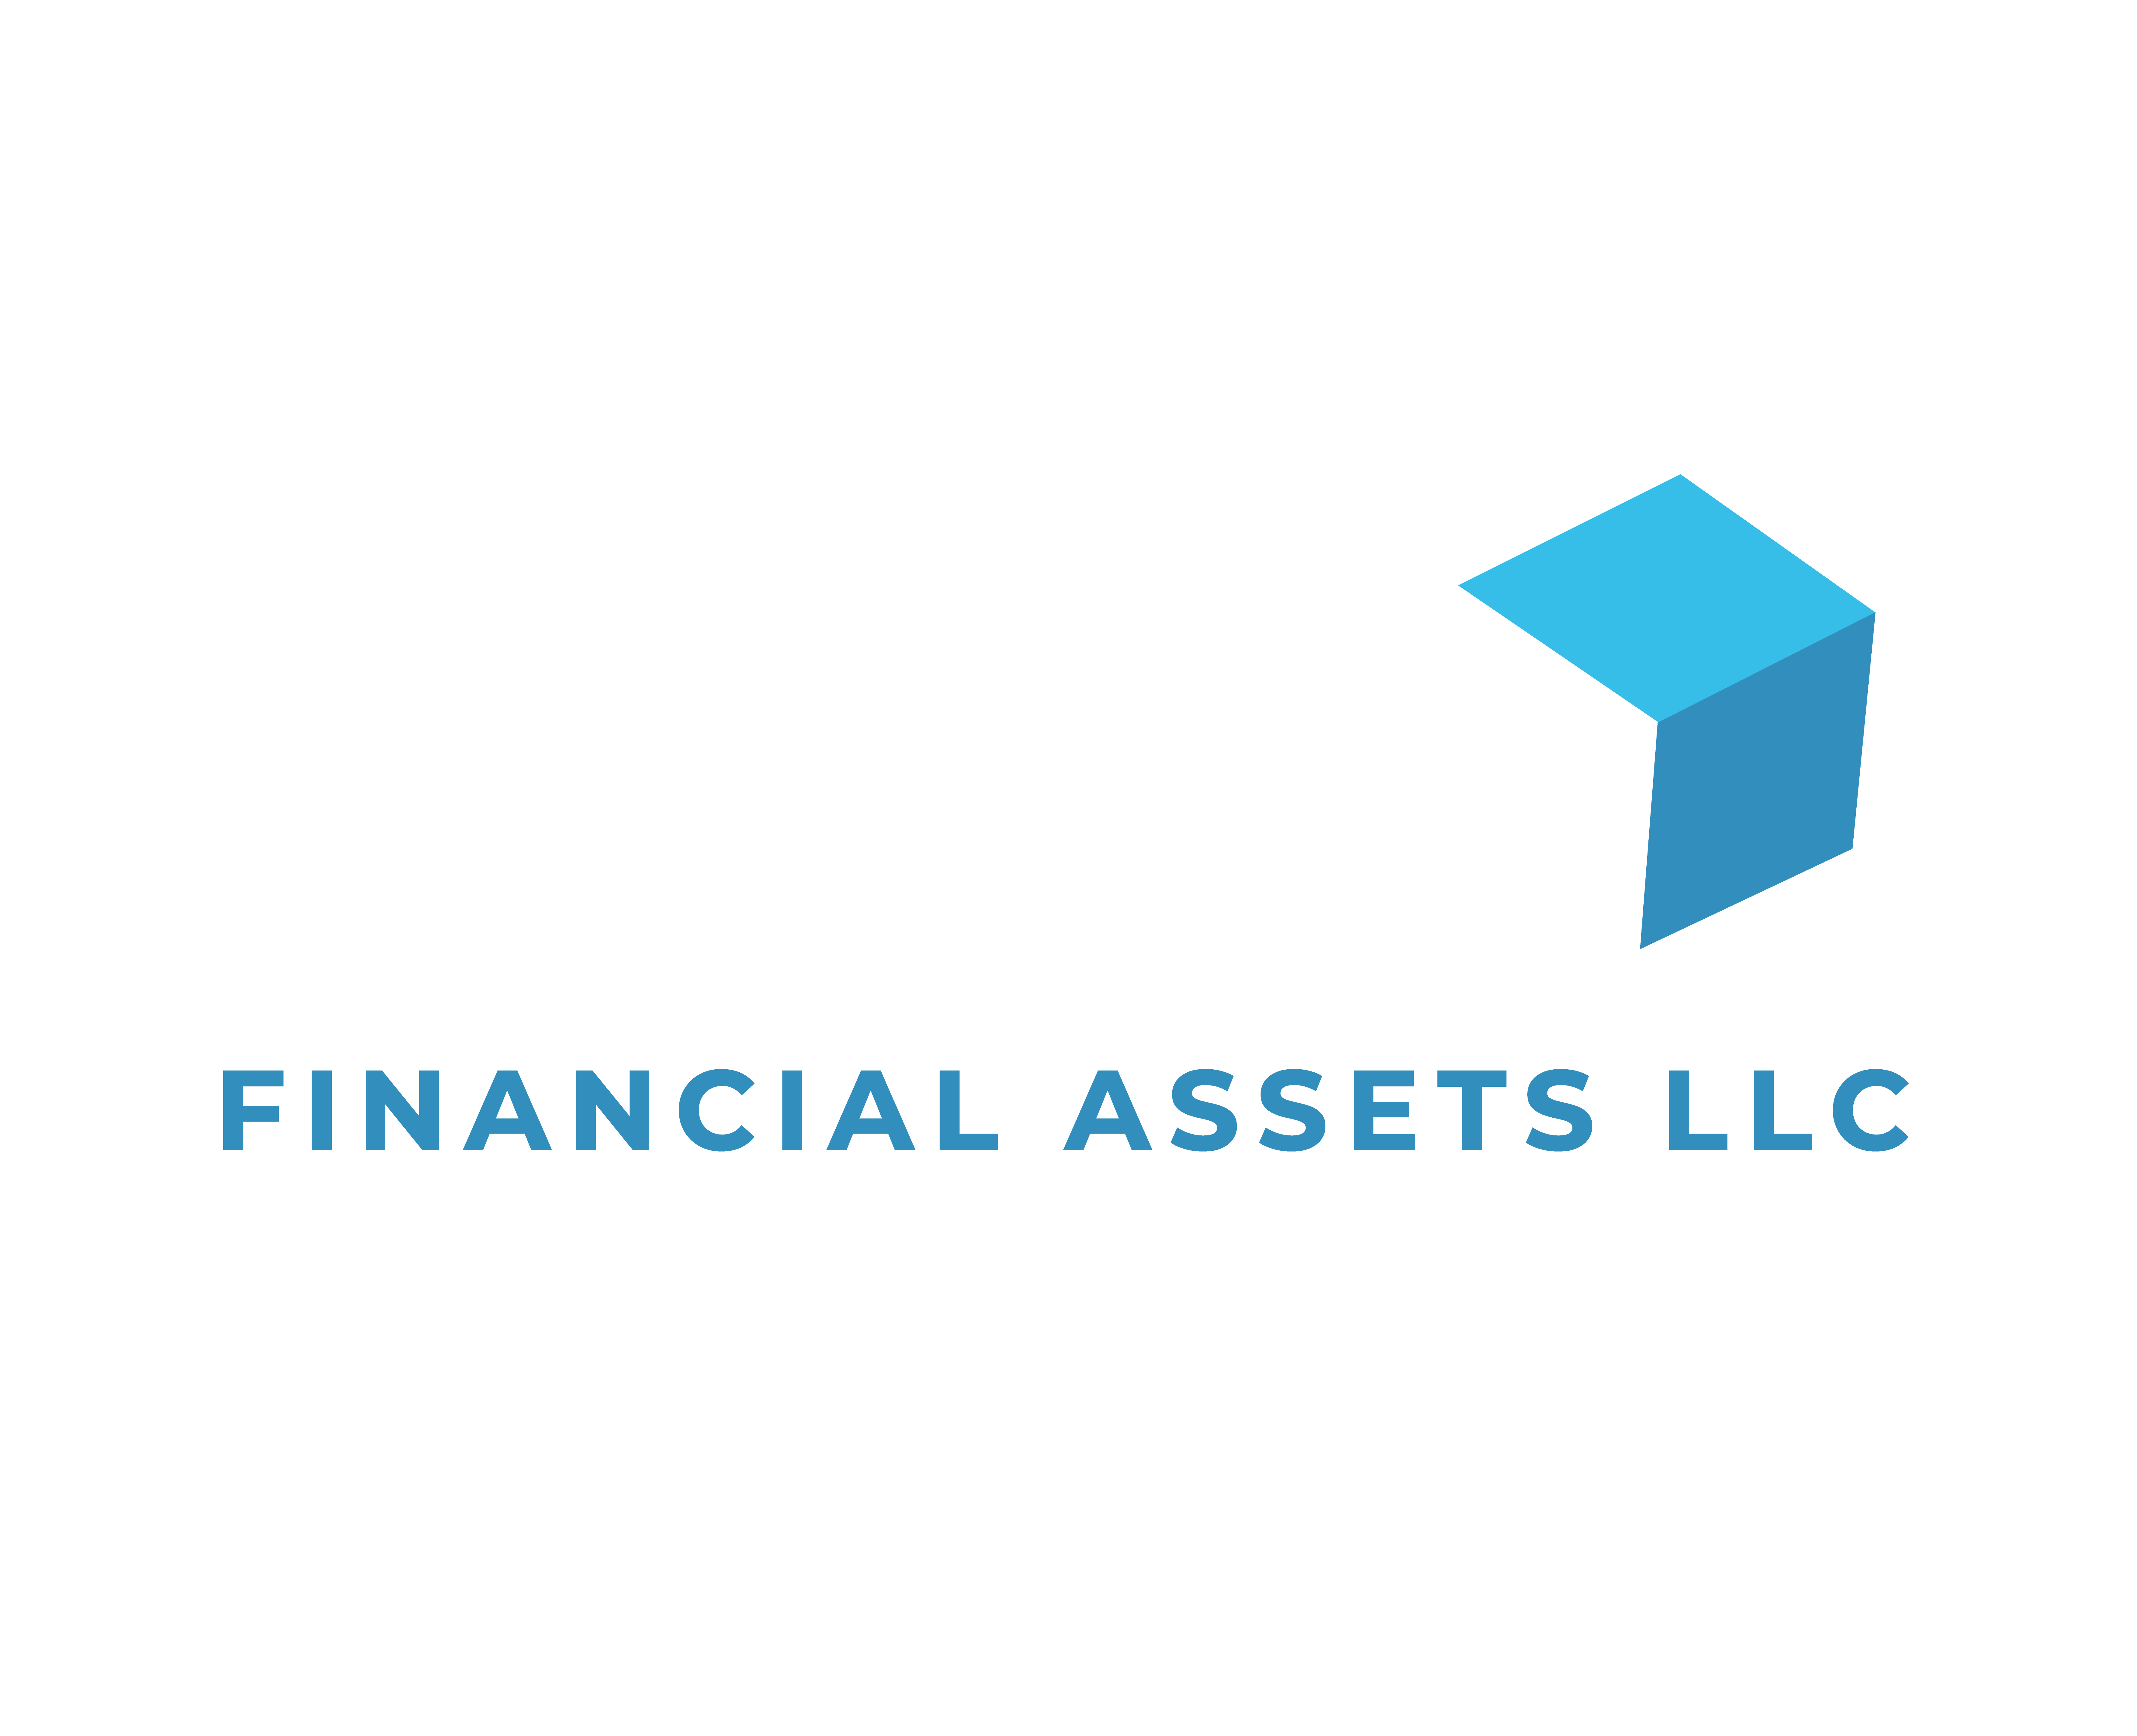 ACA FINANCIAL ASSETS LLC